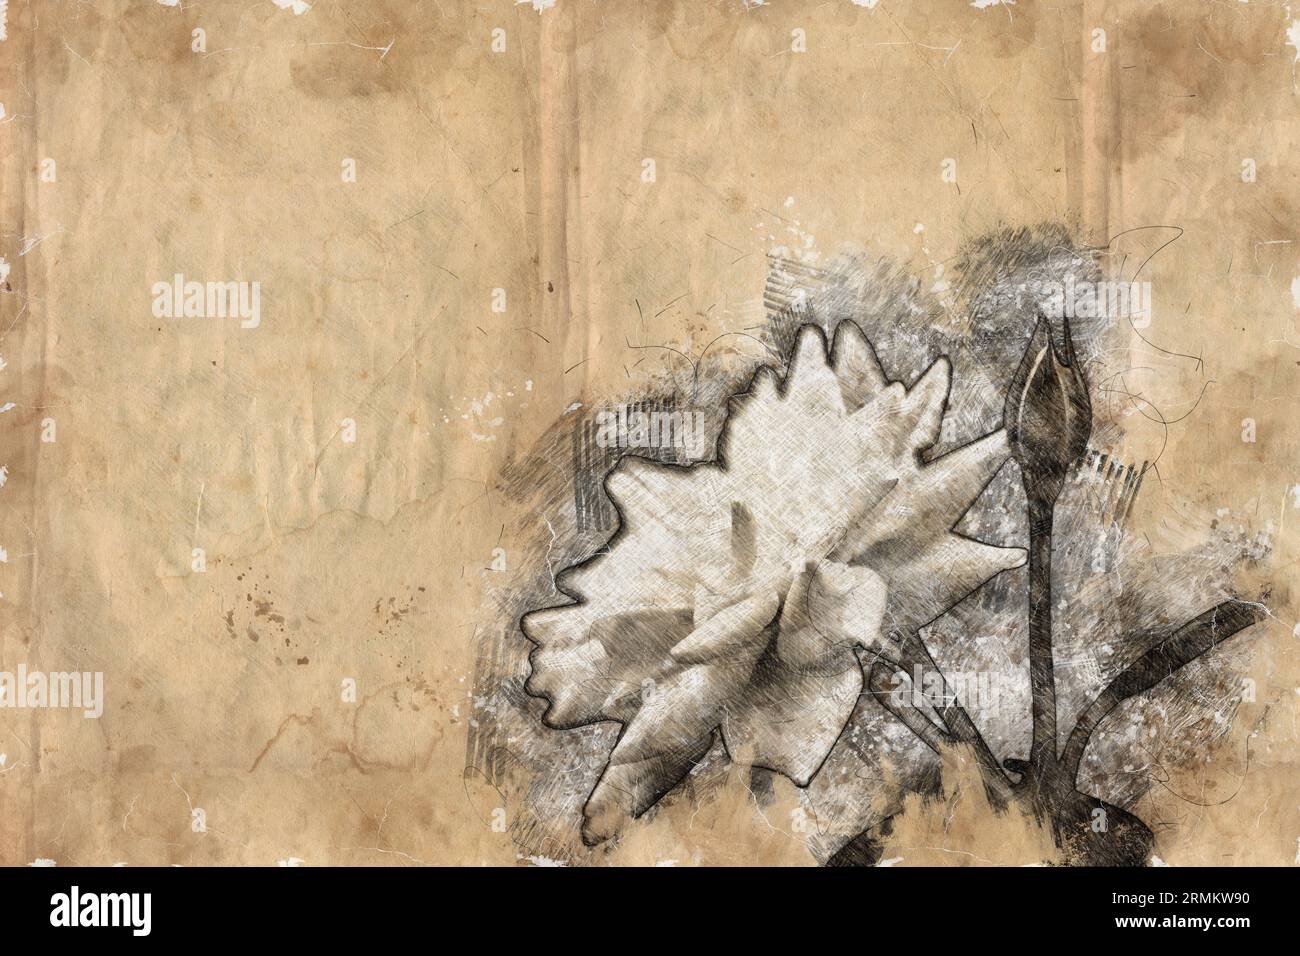 Digitales Bild einer wunderschönen und perfekten weißen Eisbergraue Stockfoto